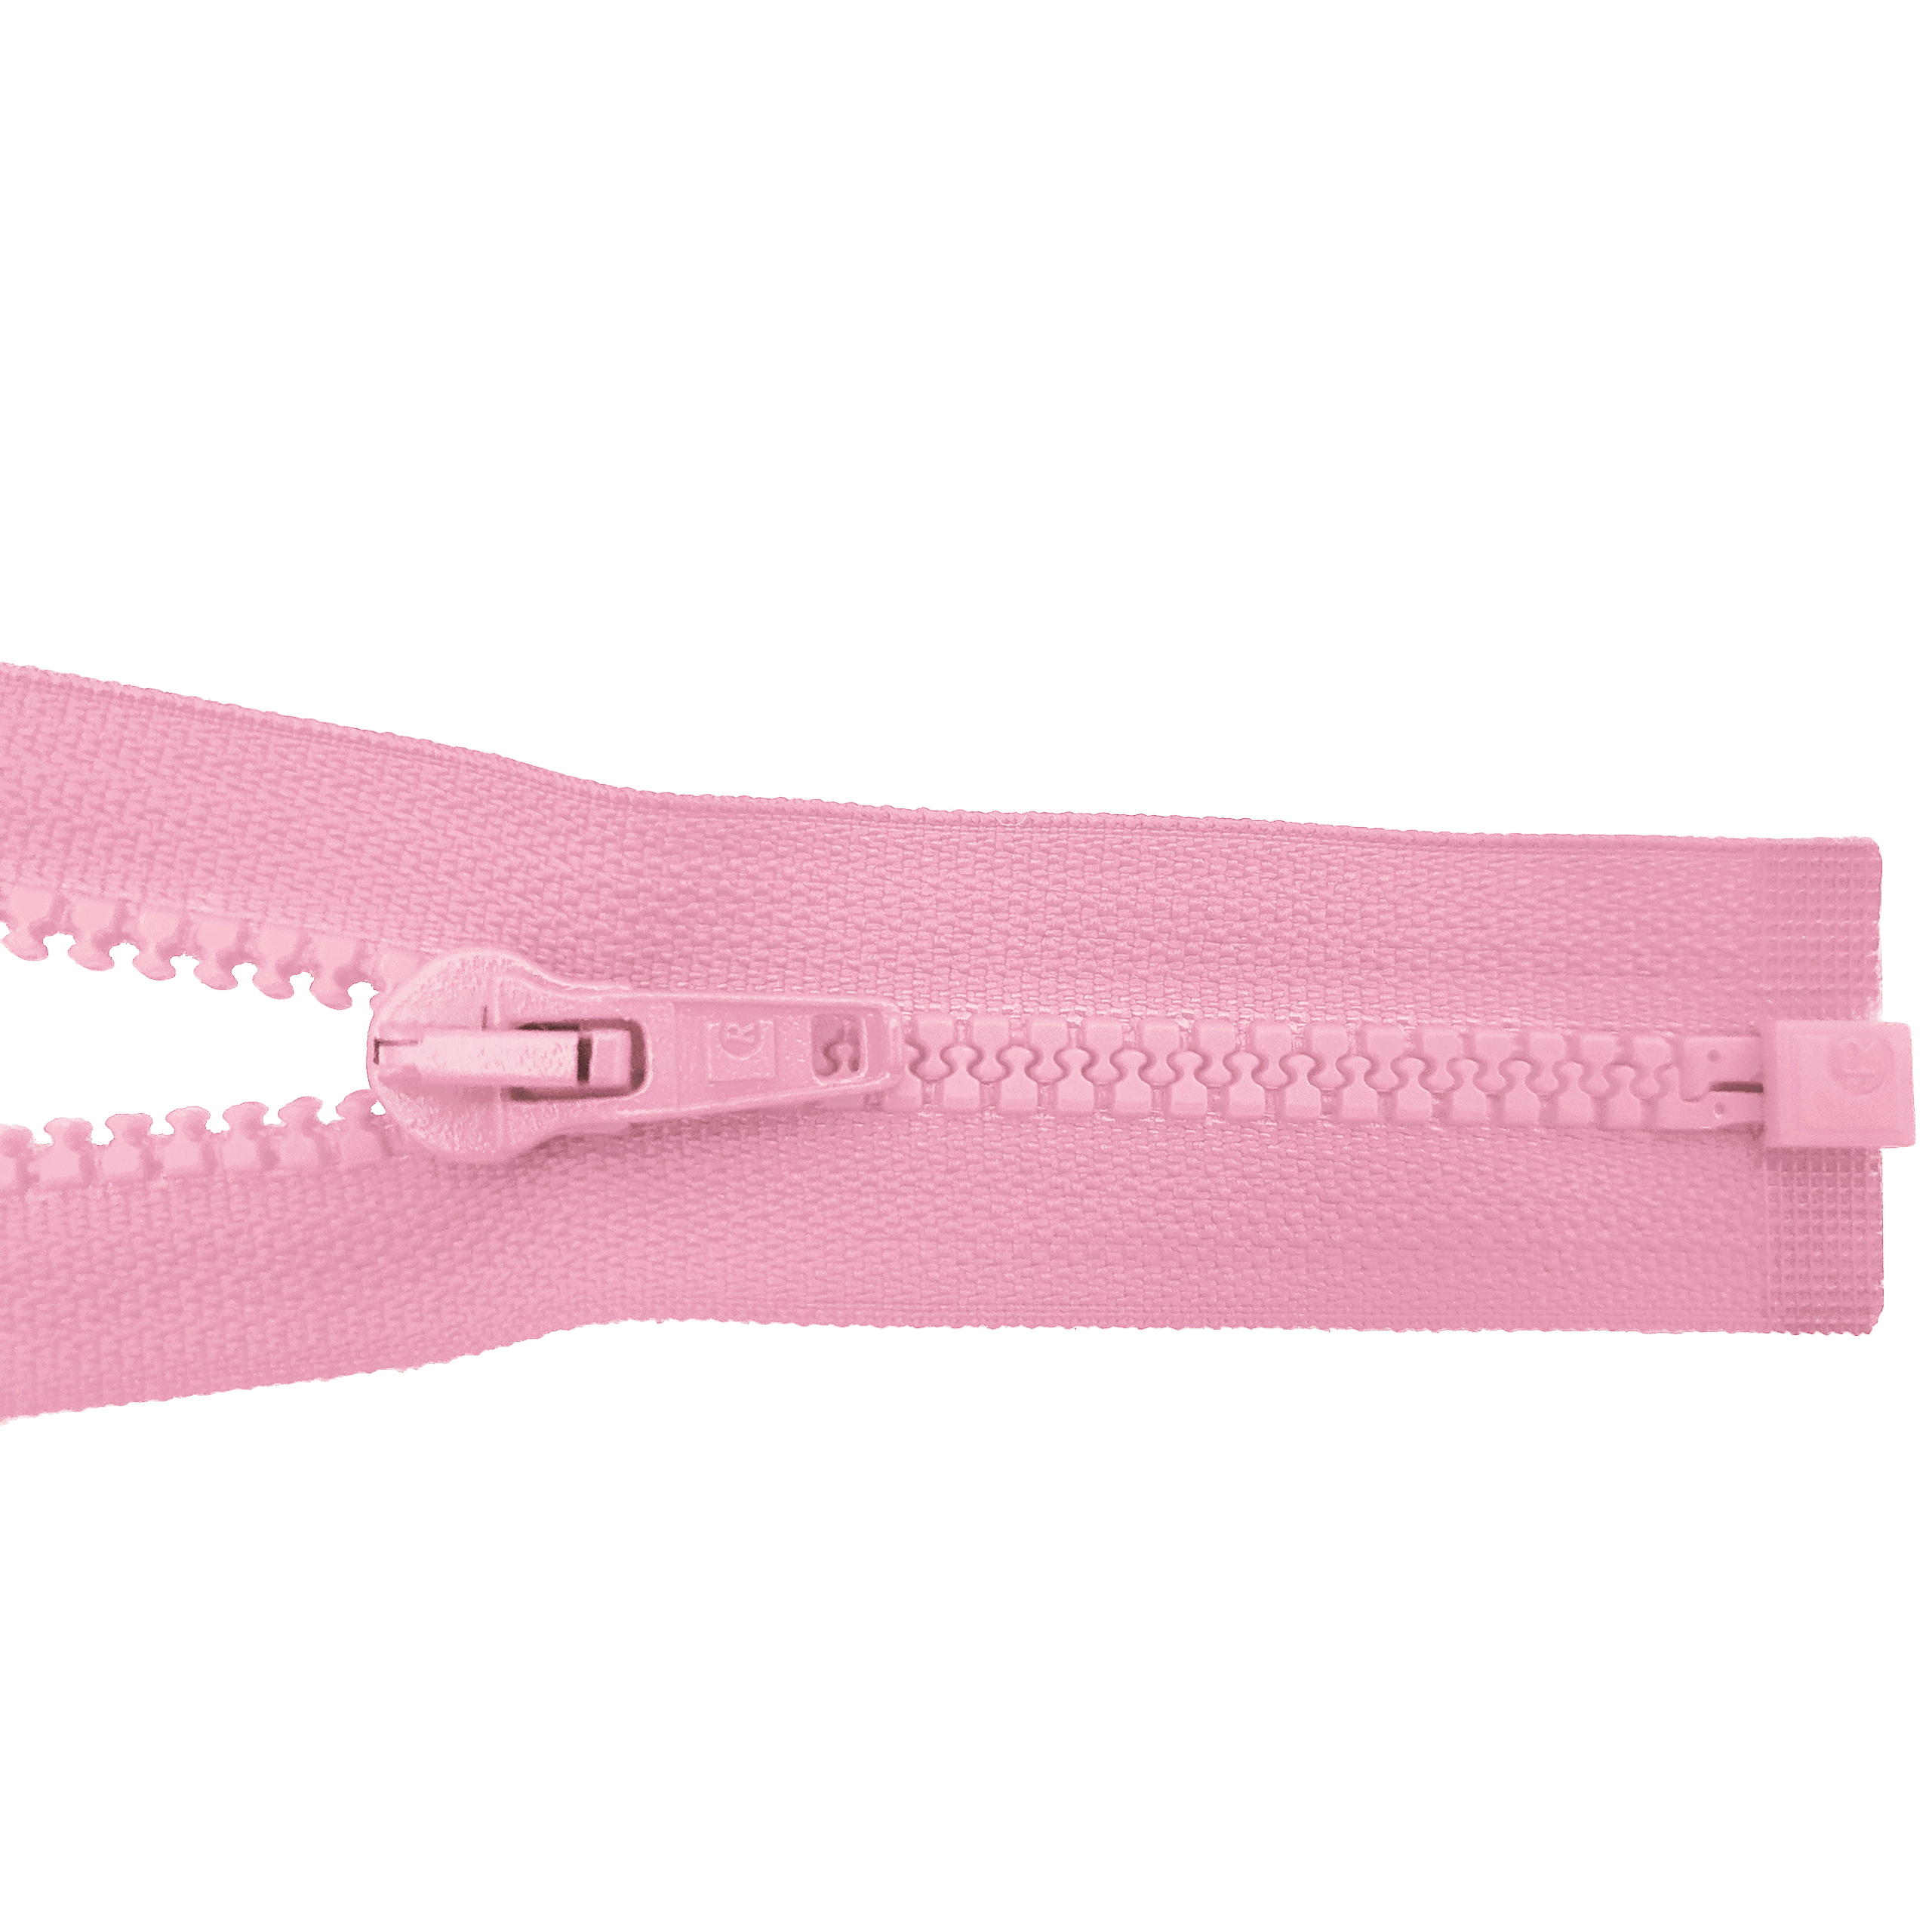 Reißverschluss 80cm, teilbar, Kstoff Zähne breit, rosa, hochwertiger Marken-Reißverschluss von Rubi/Barcelona